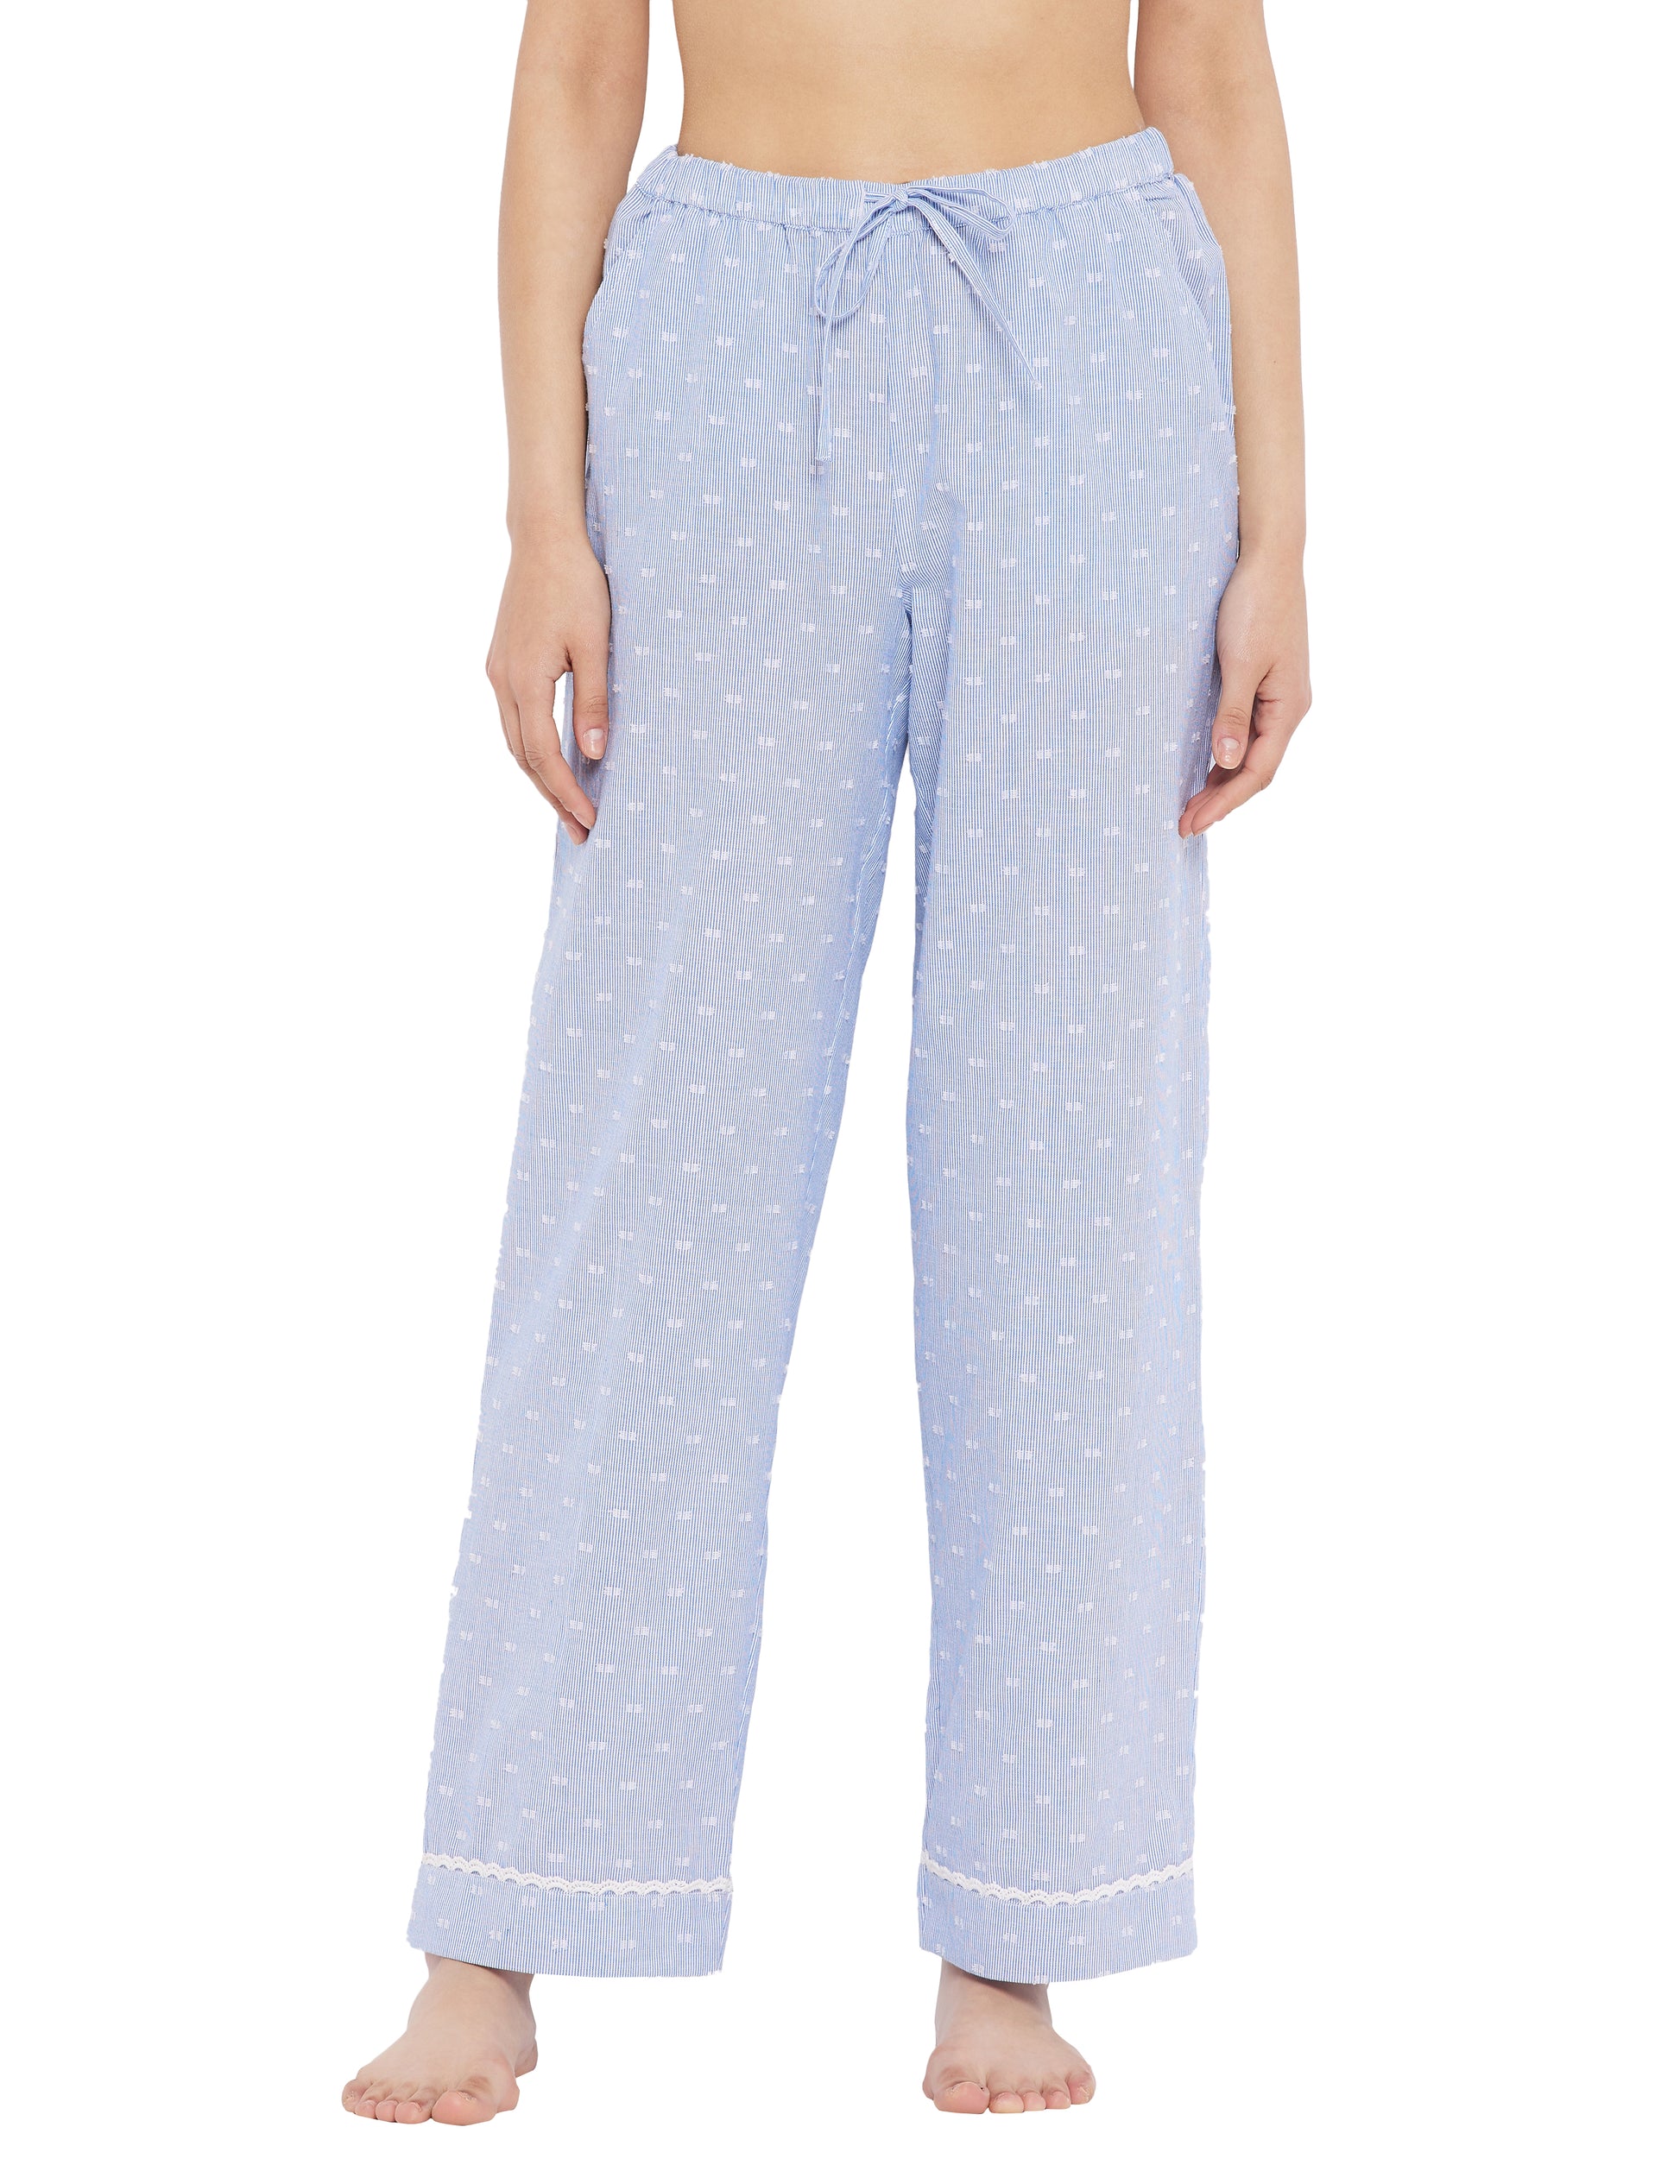 Lana Cotton Lace Sleep Pajamas Pajamas 25.00 Indigo Paisley